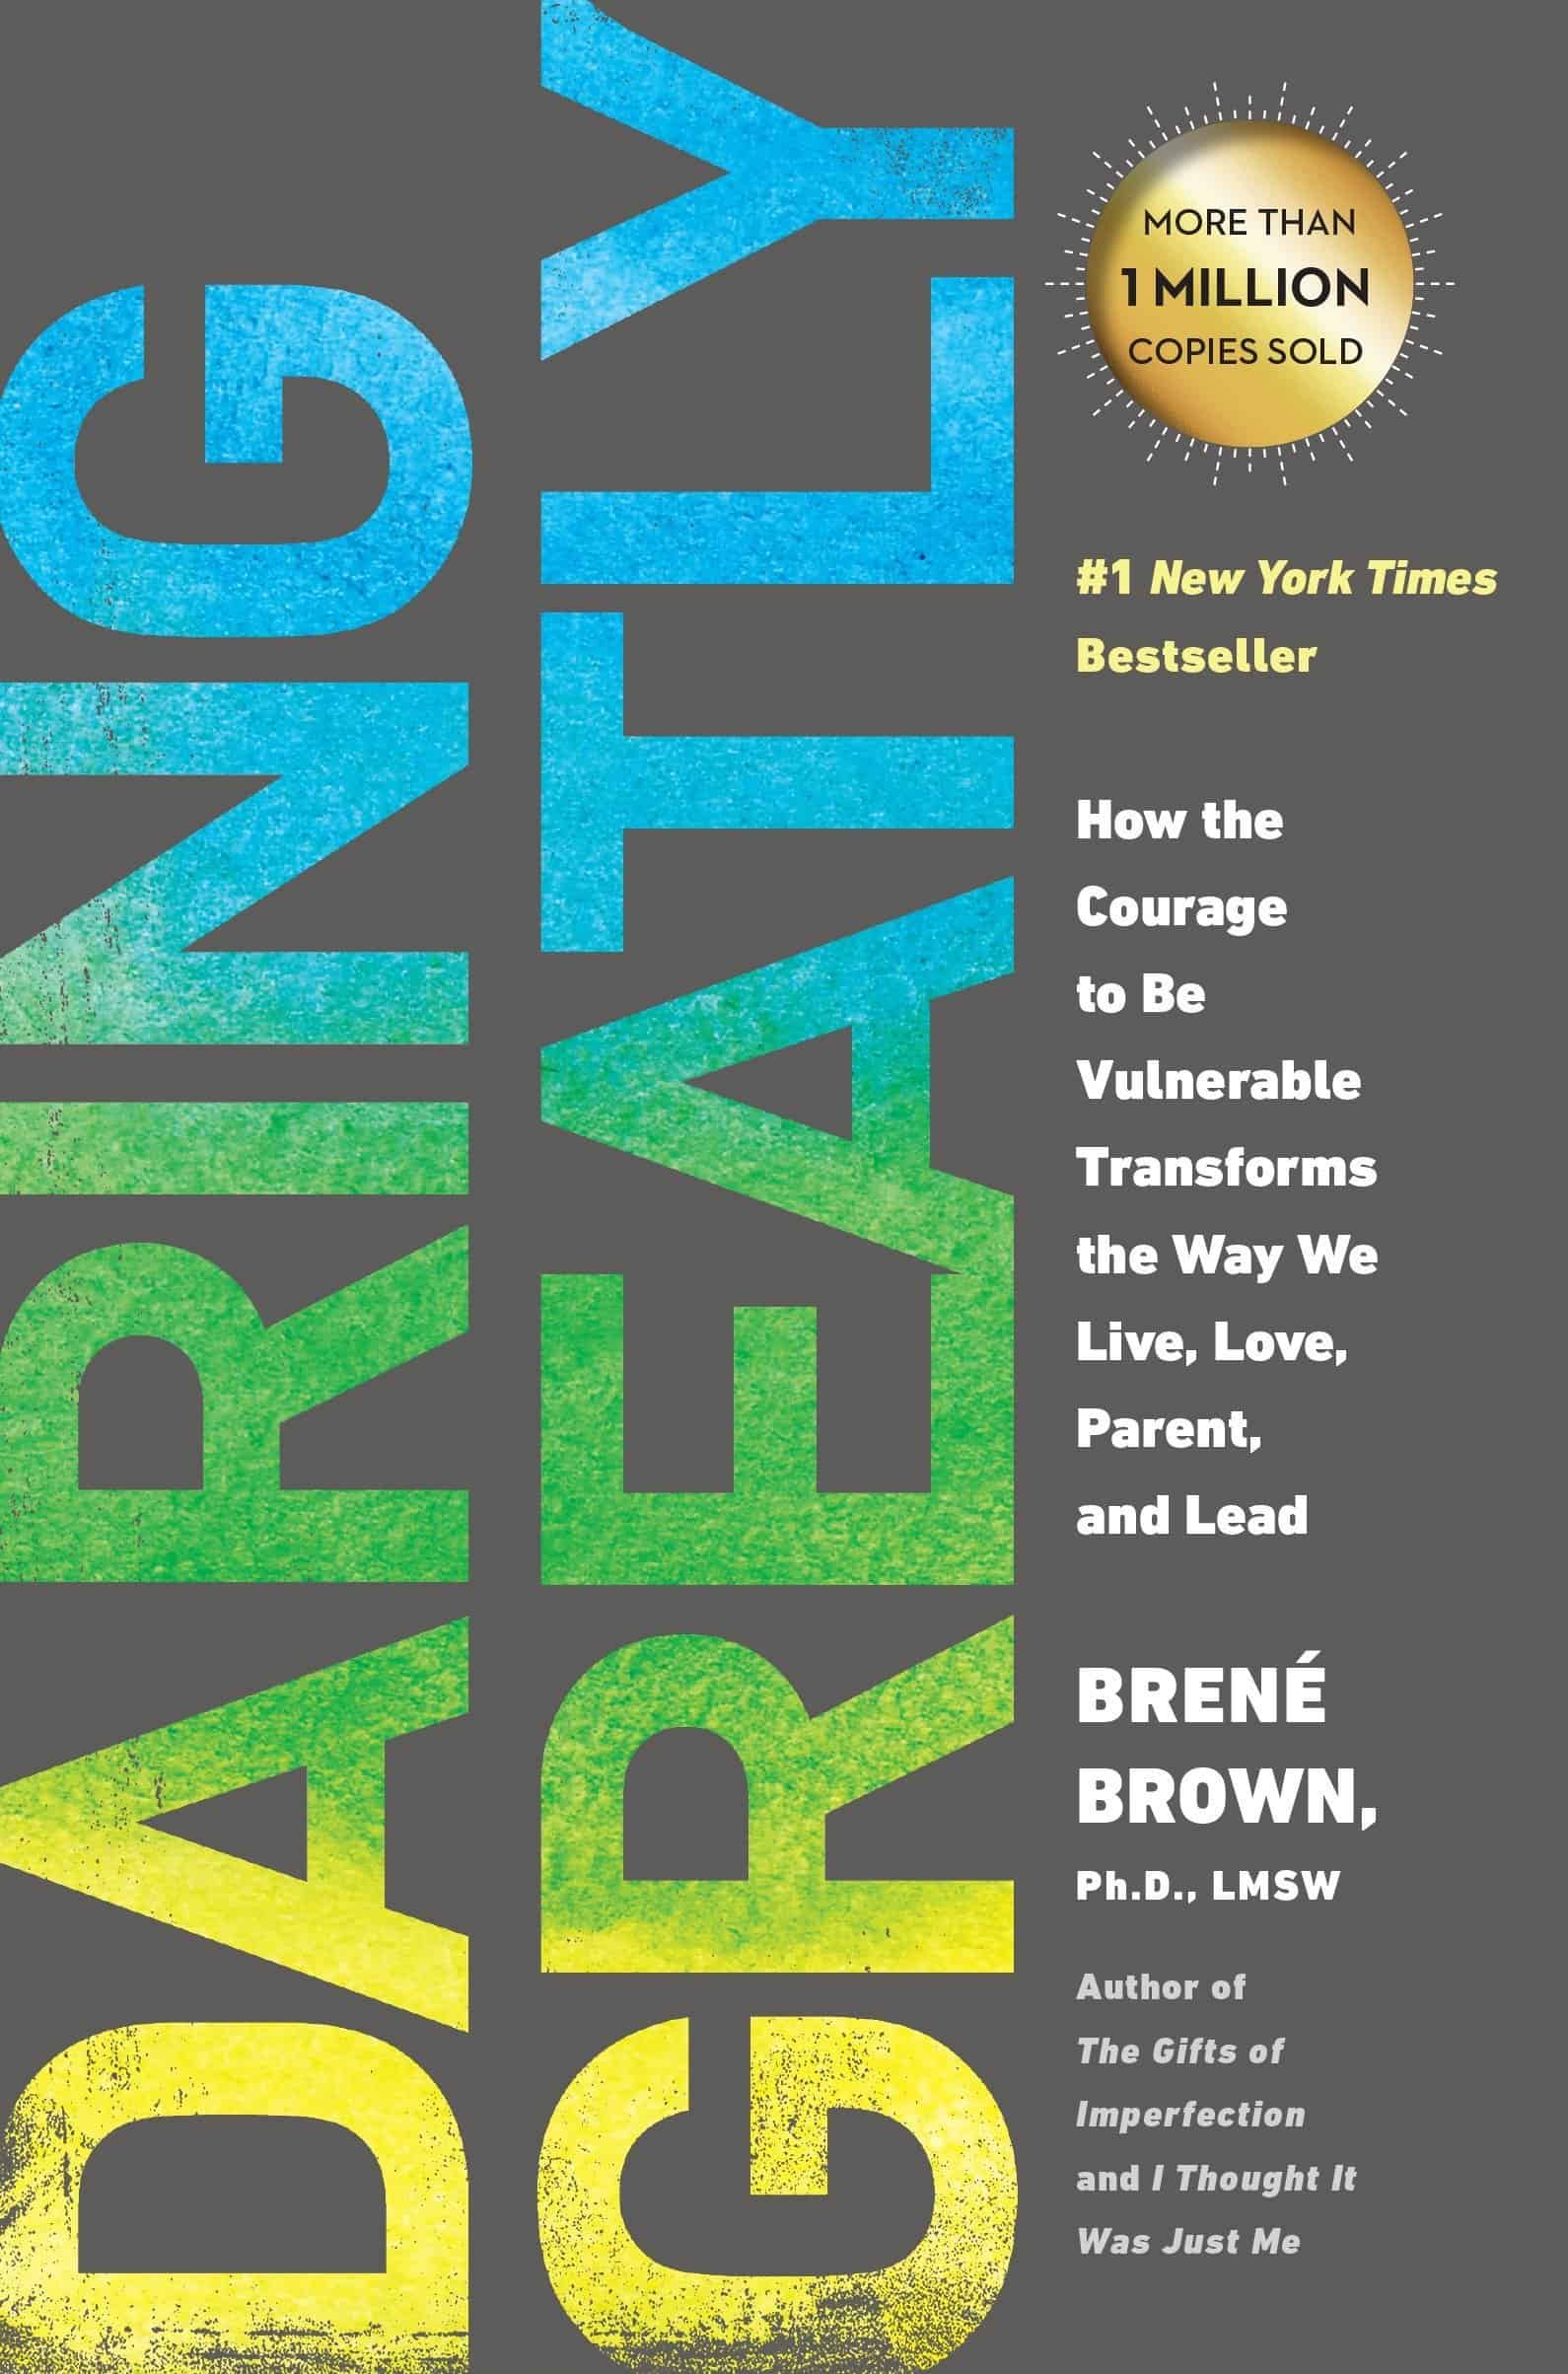 Daring Greatly by Brené Brown - Best Self Help Book